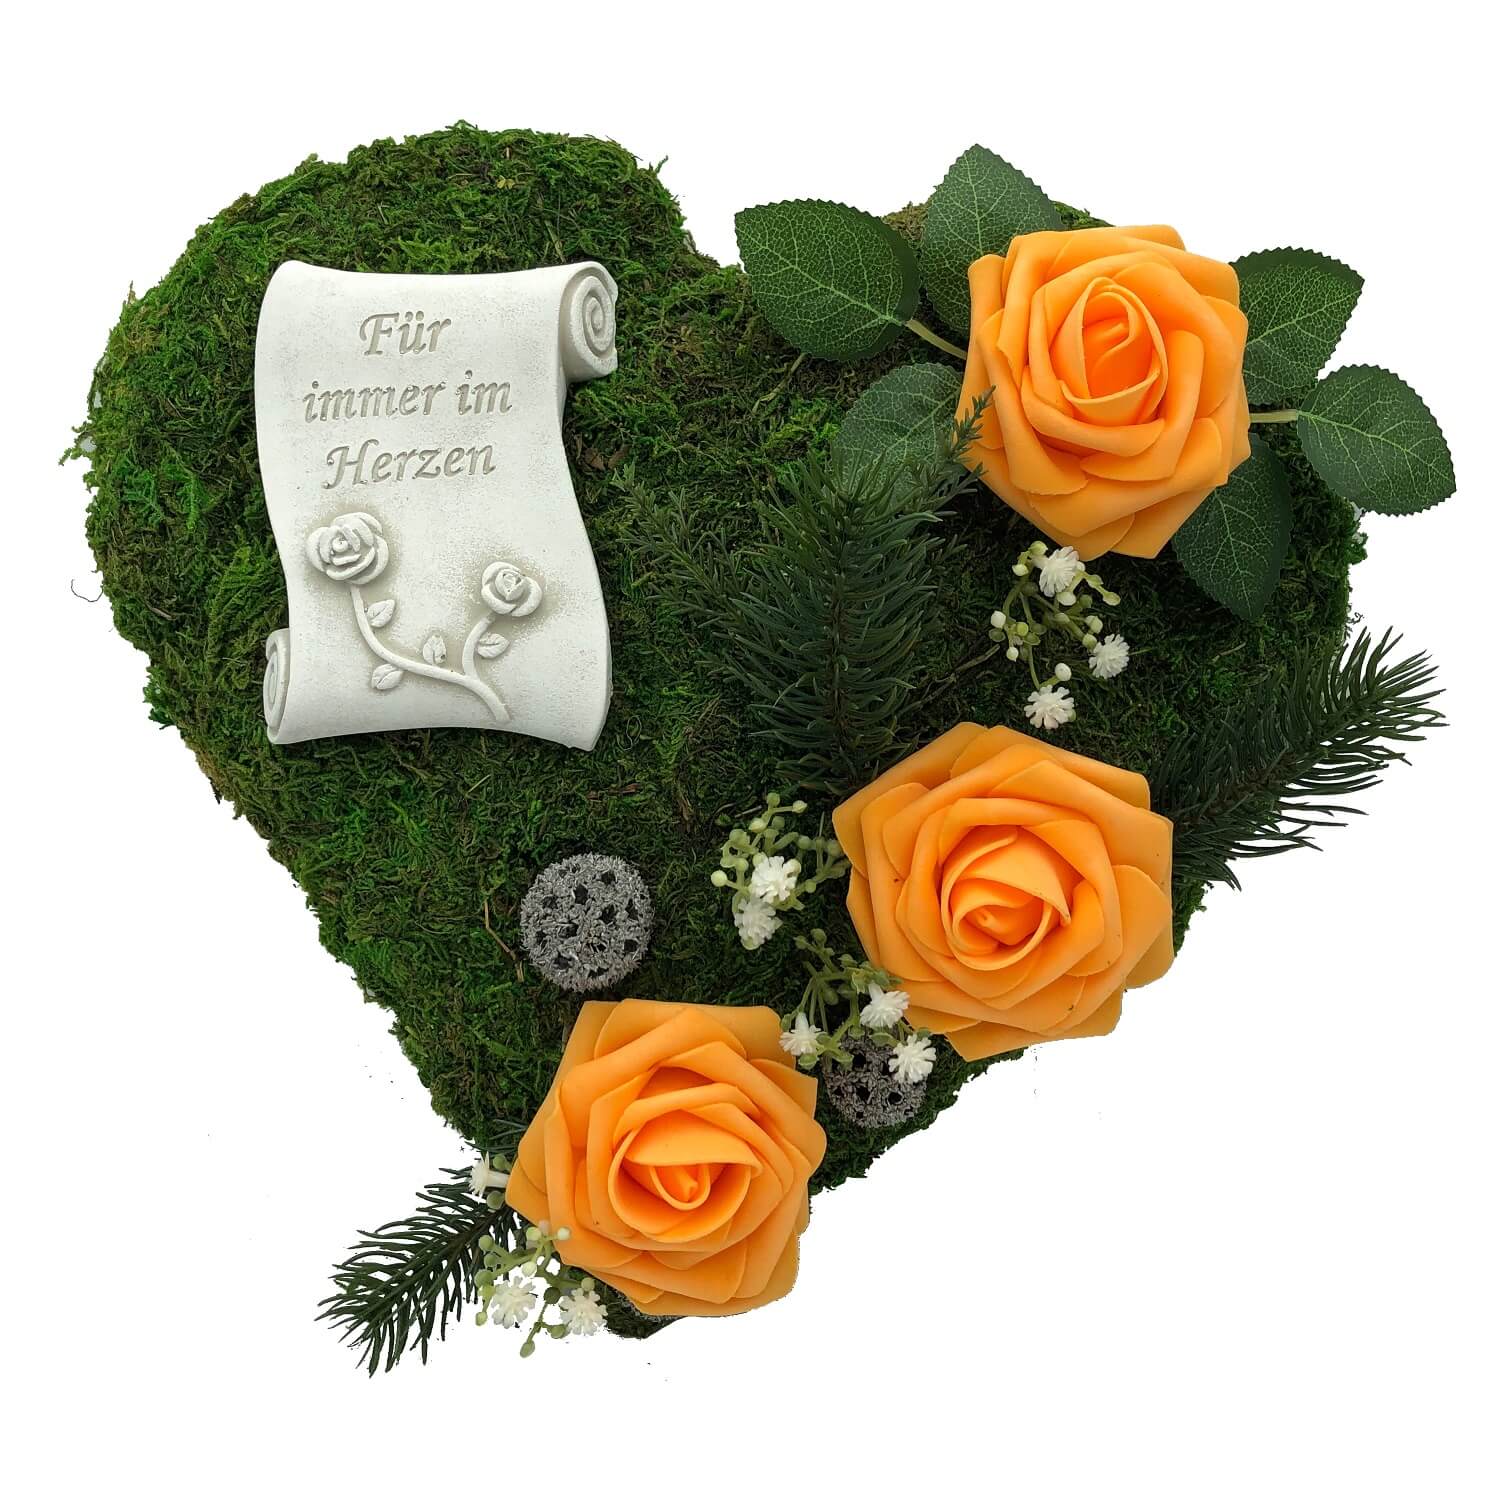 Grabgesteck "Für immer im Herzen" 30cm 3 Rosen orange